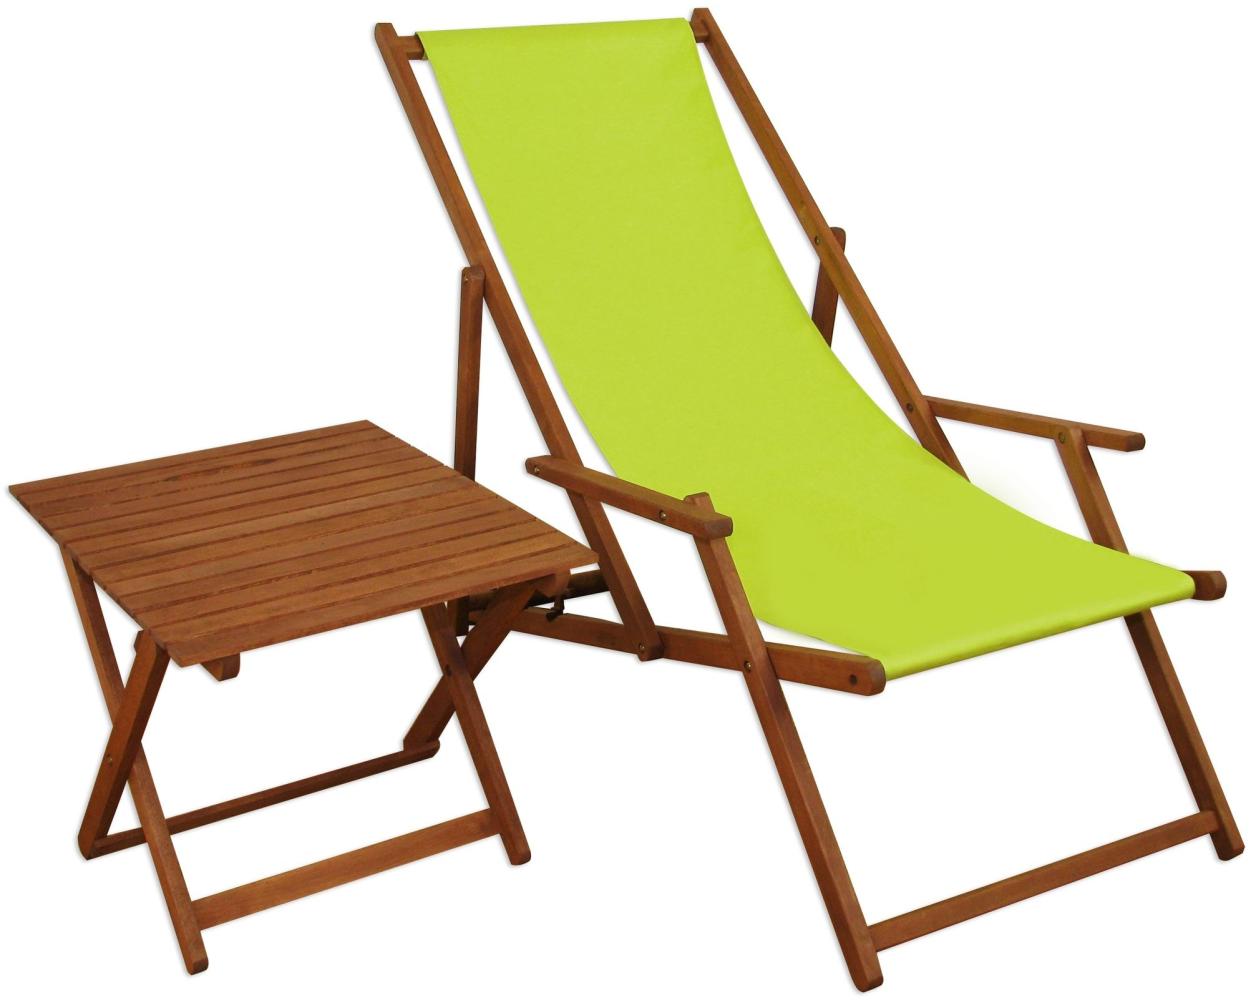 Gartenliege pistazie Sonnenliege Strandstuhl Relaxliege Tisch Buche dunkel klappbar 10-306T Bild 1